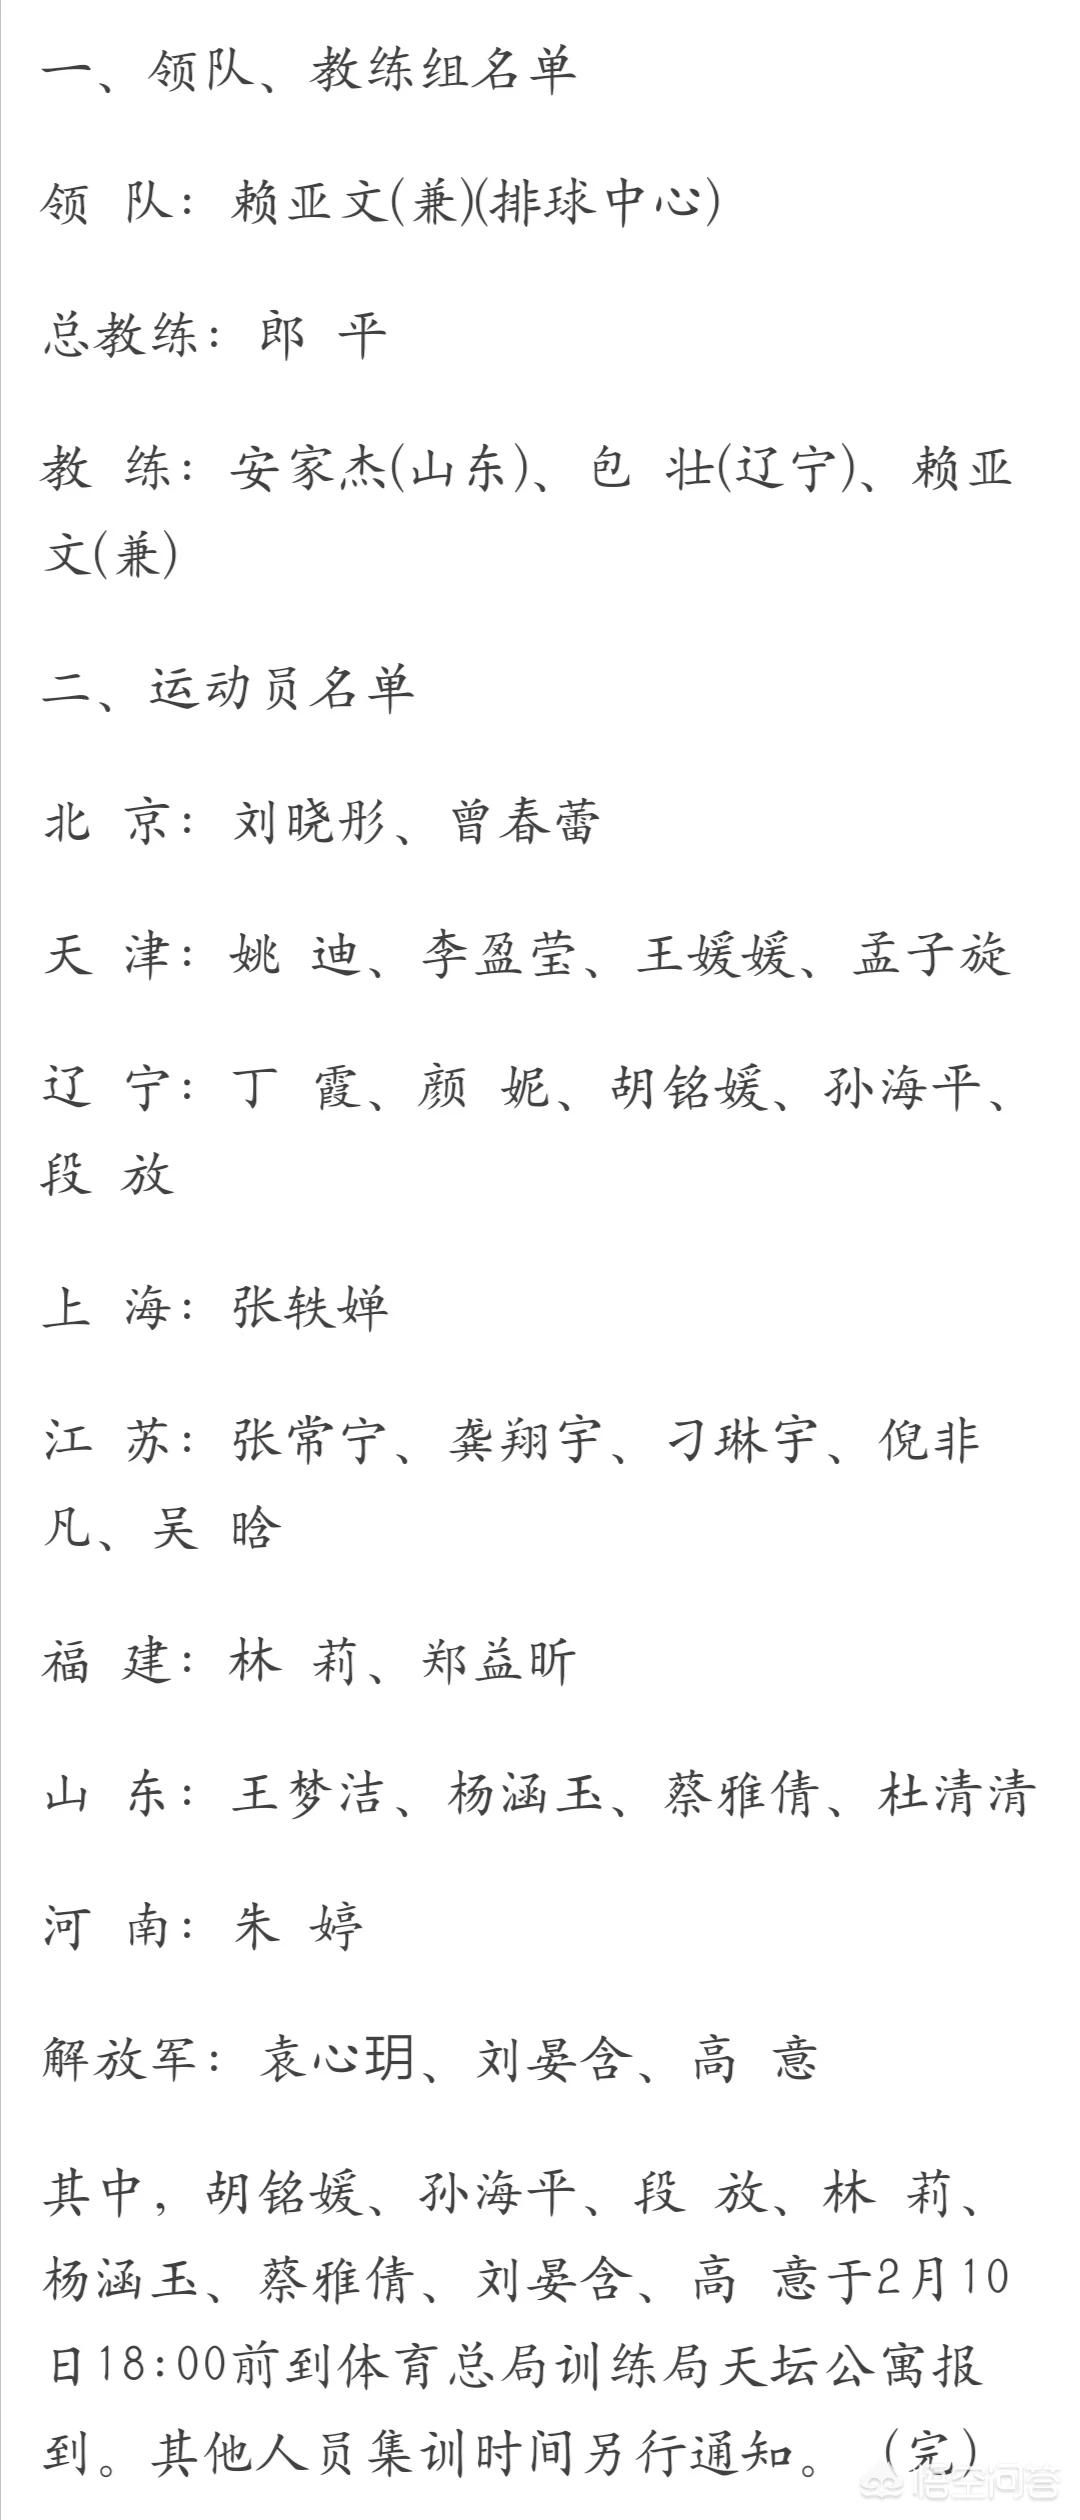 2019年中国女排队员名单(中国女排国家队集训名单)